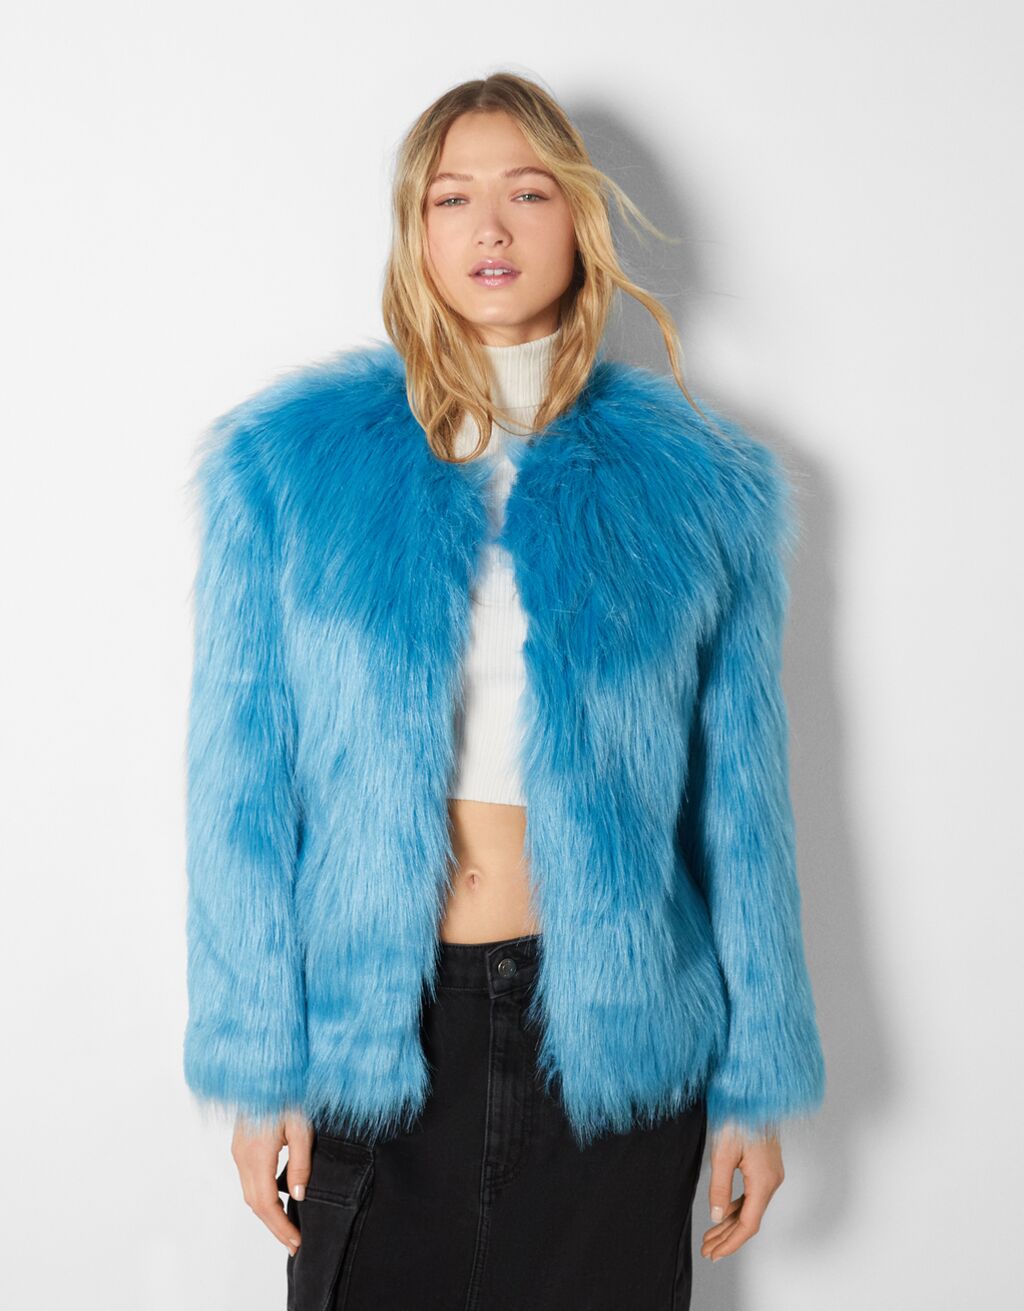 Colored faux fur jacket